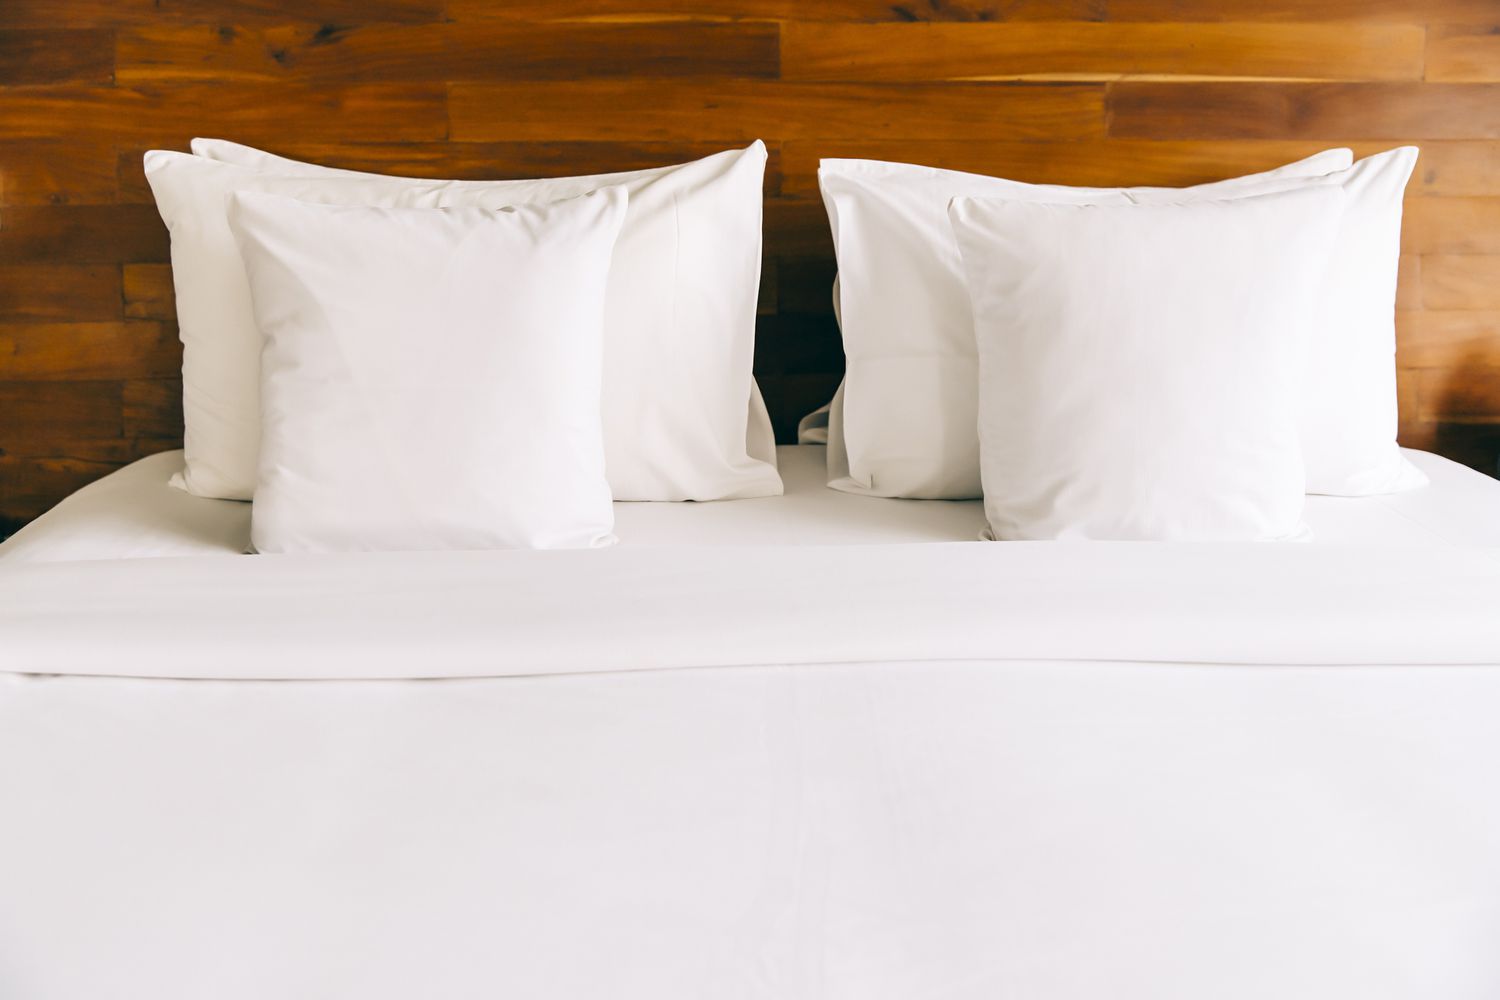 Uma cama feita com lençóis e travesseiros brancos contra uma cabeceira de madeira.